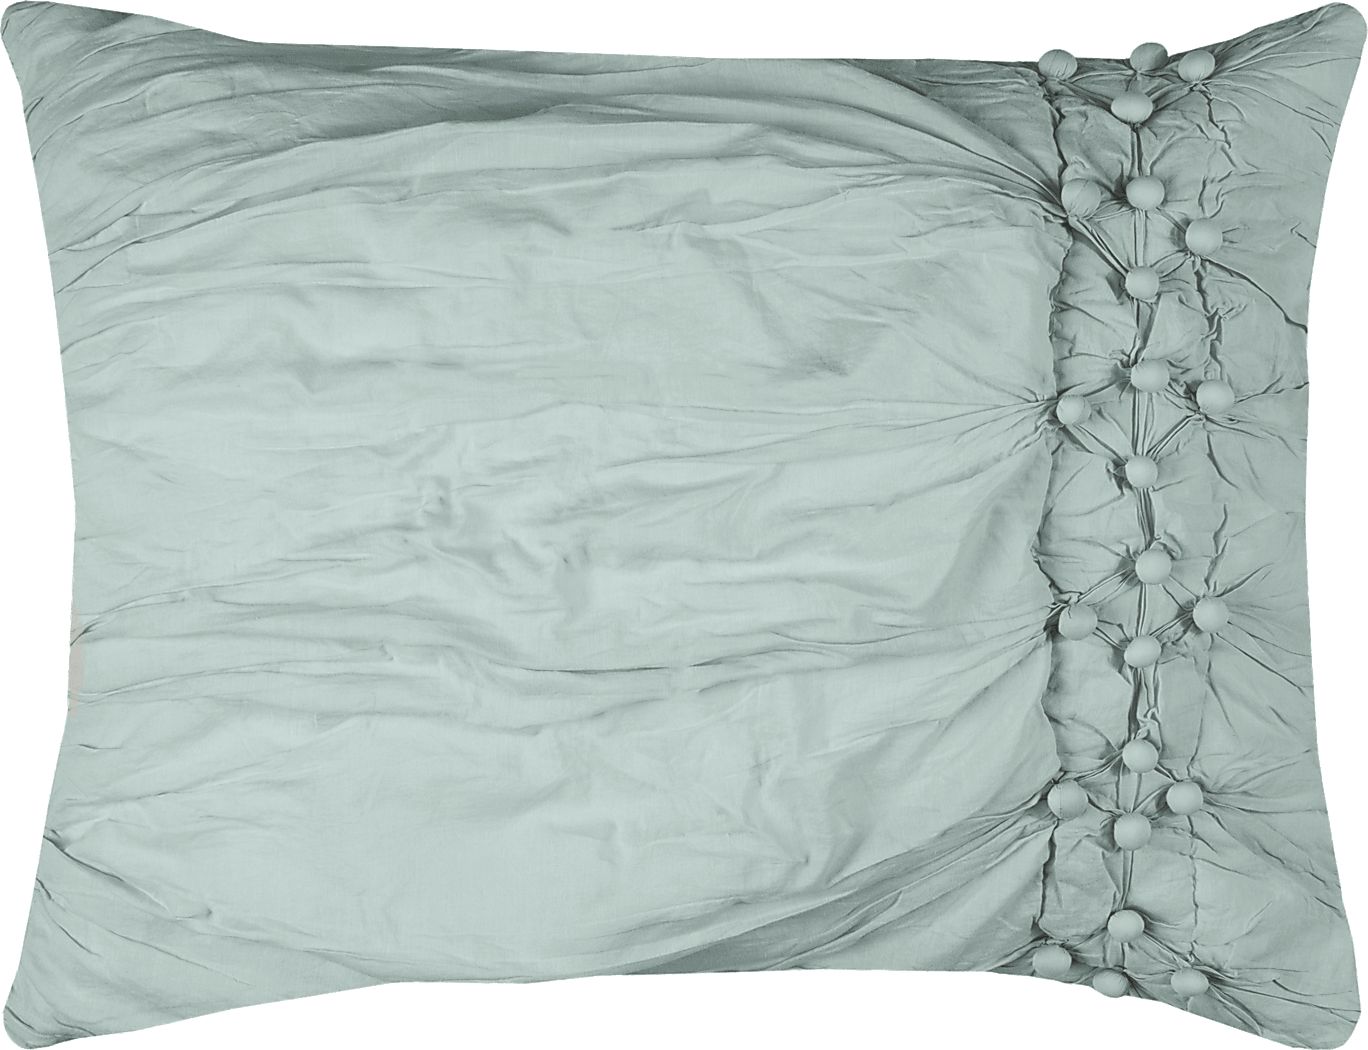 Details about   Pratesi KING Pillow Sham Griffe Egyptian Cotton WHITE/BLACK G4132 